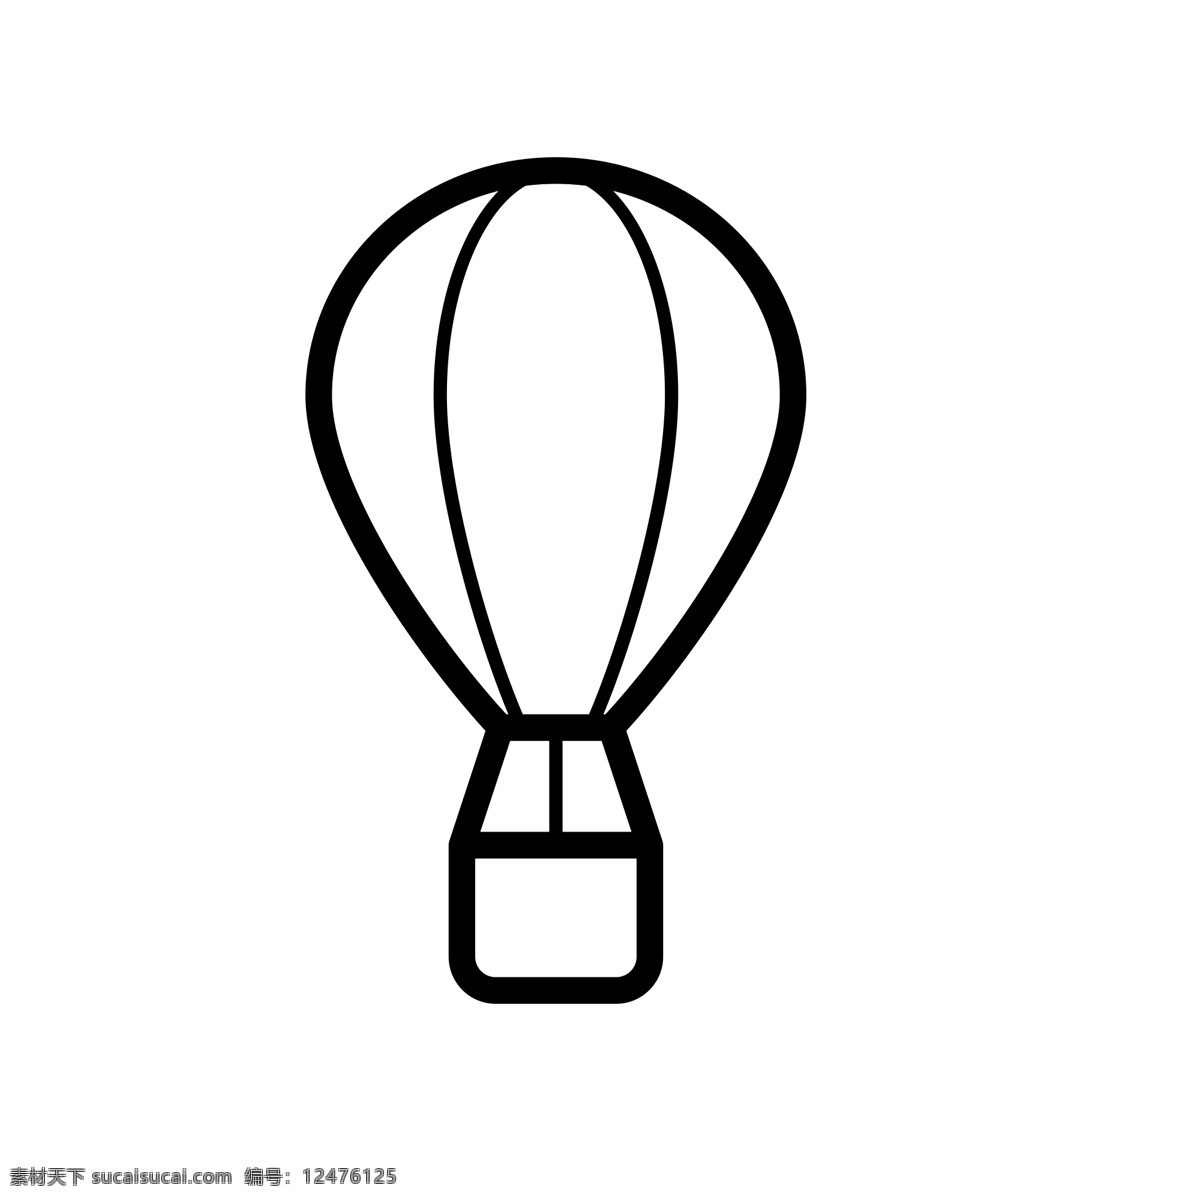 扁平化热气球 氢气球 热气球 扁平化ui ui图标 手机图标 界面ui 网页ui h5图标